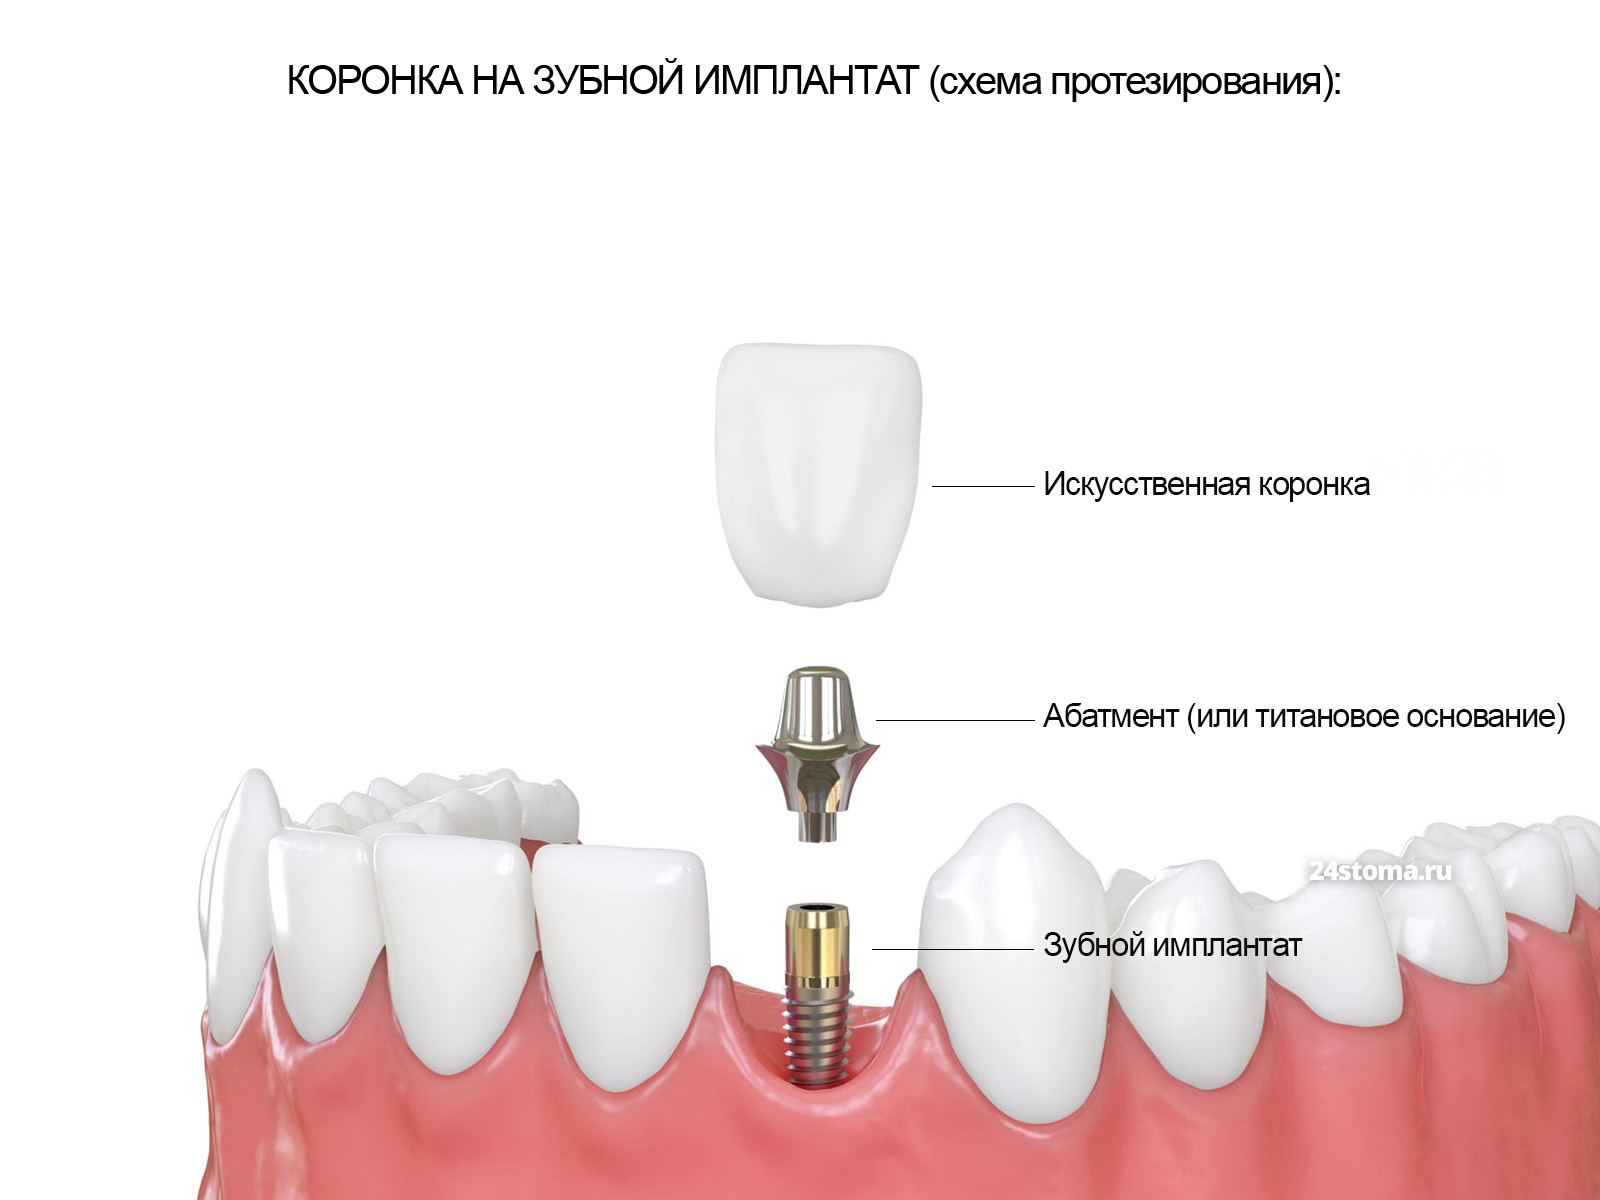 Коронка на зубной имплантат.